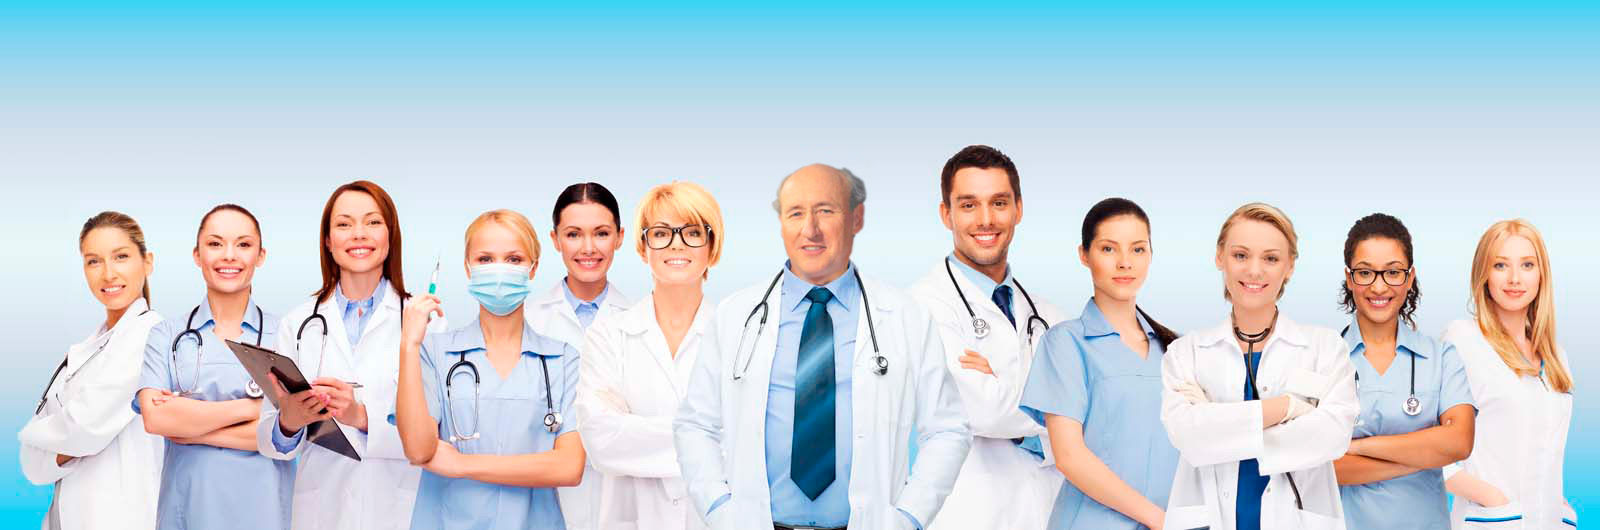 Doctors: Jerry K's Team